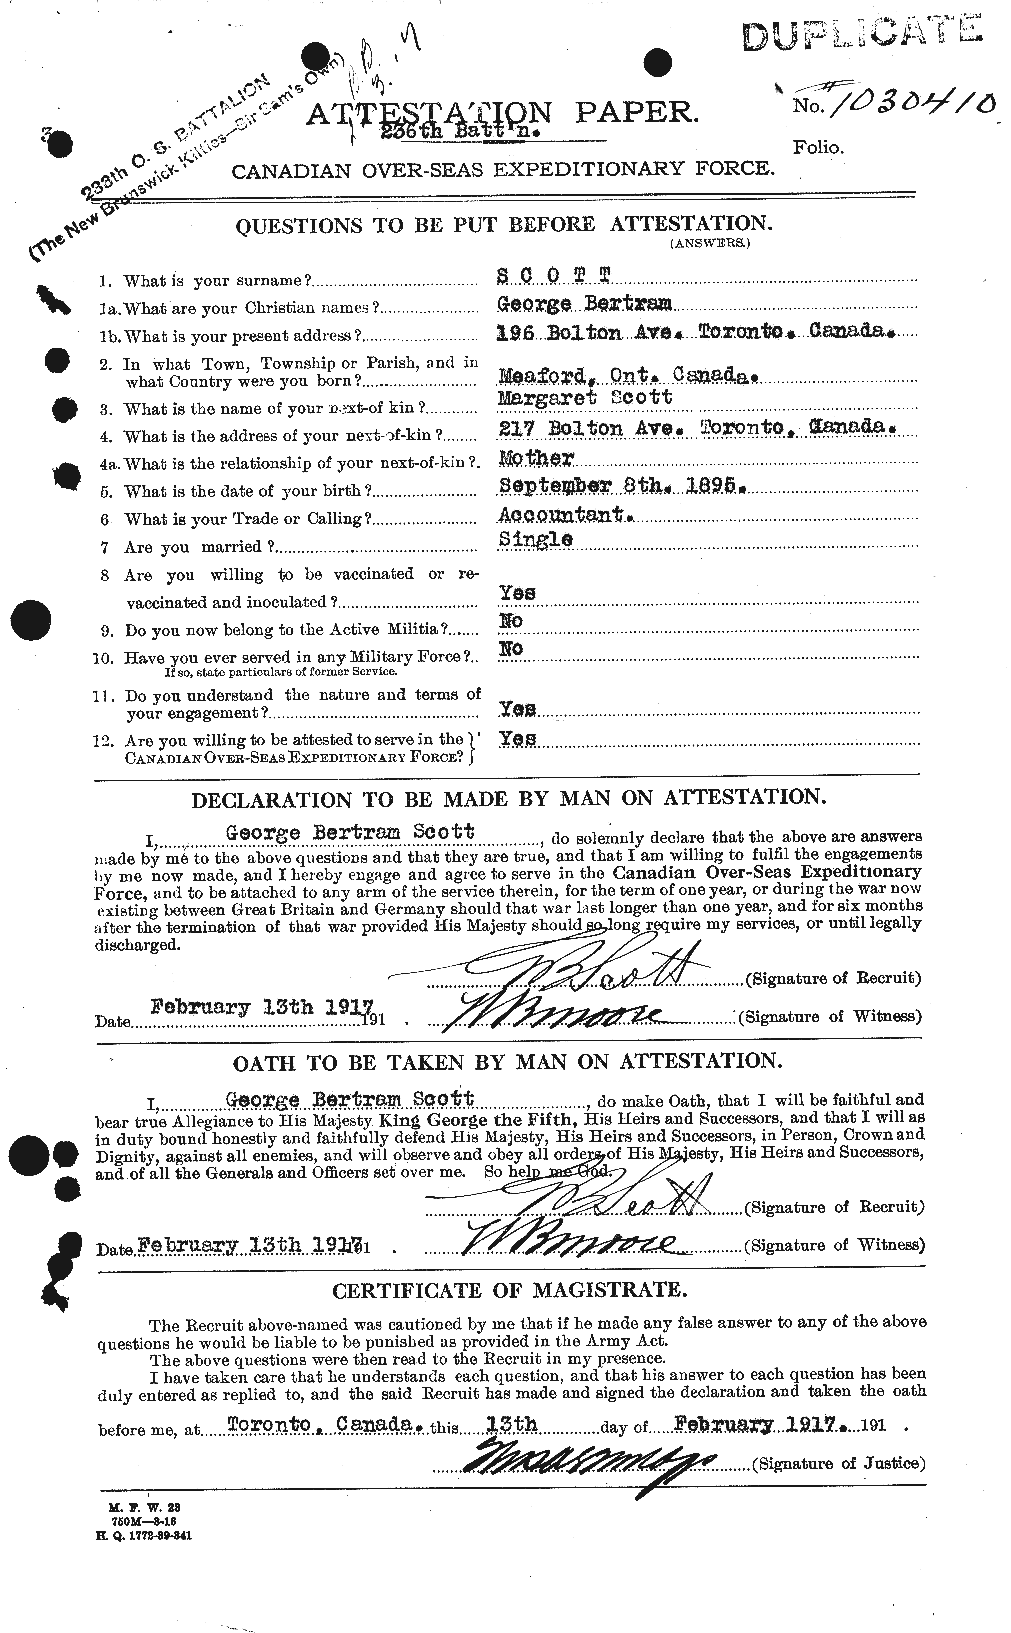 Dossiers du Personnel de la Première Guerre mondiale - CEC 083569a